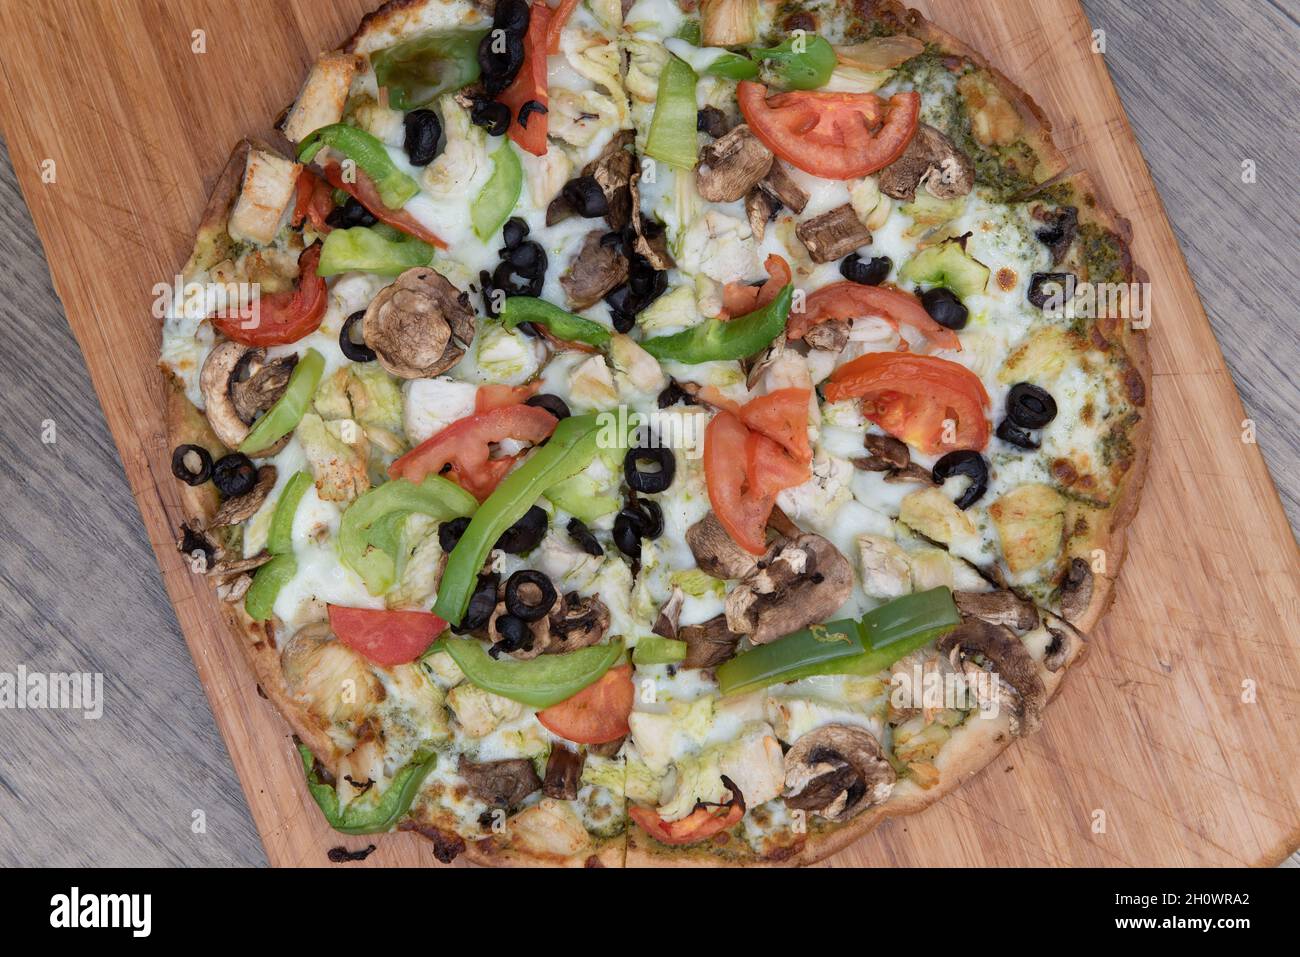 Vue en hauteur de pizza à croûte de chou-fleur fraîchement cuite avec garnitures de légumes hachées servies sur un plateau en bois. Banque D'Images